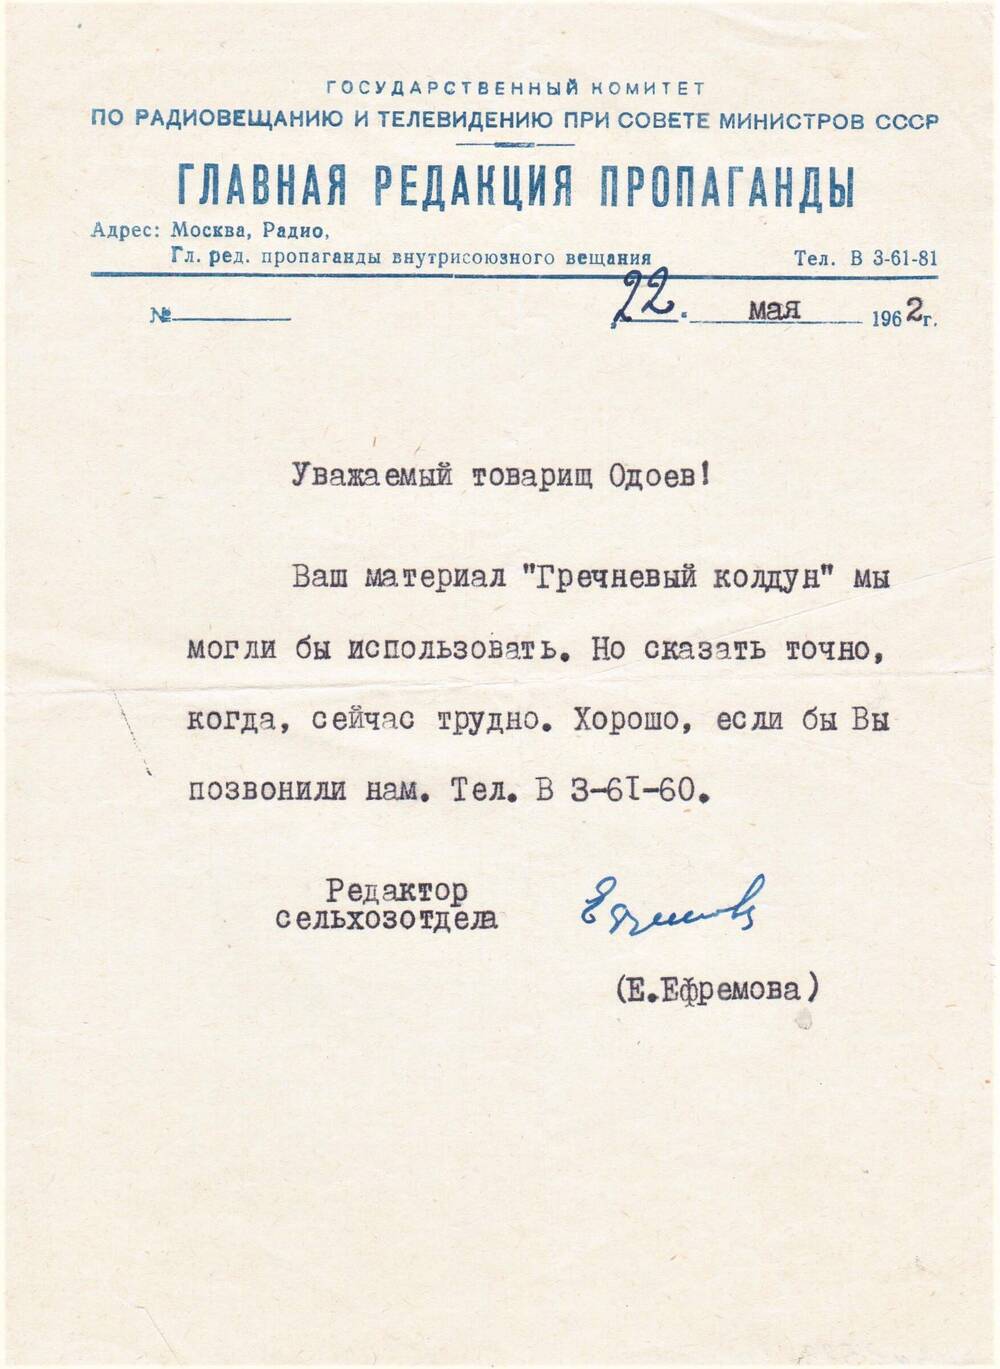 Адрес на бланке Главной редакции пропаганды от 22.05.1962 г. Одоеву Н.Н.